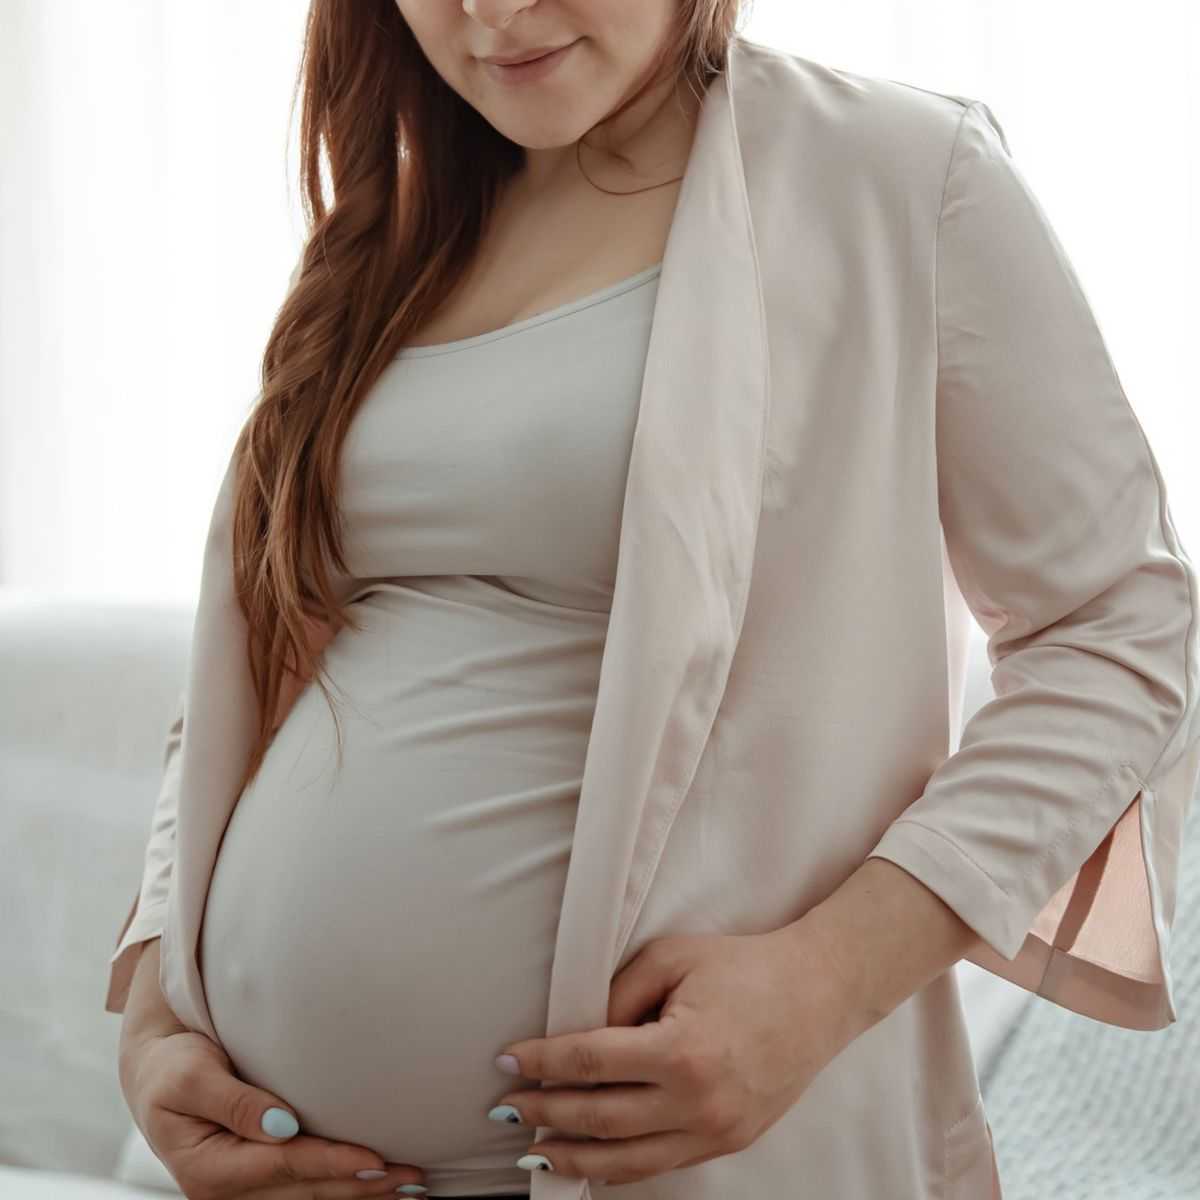 Hamilelikte Sol Kasık Ağrısı Neden Olur?